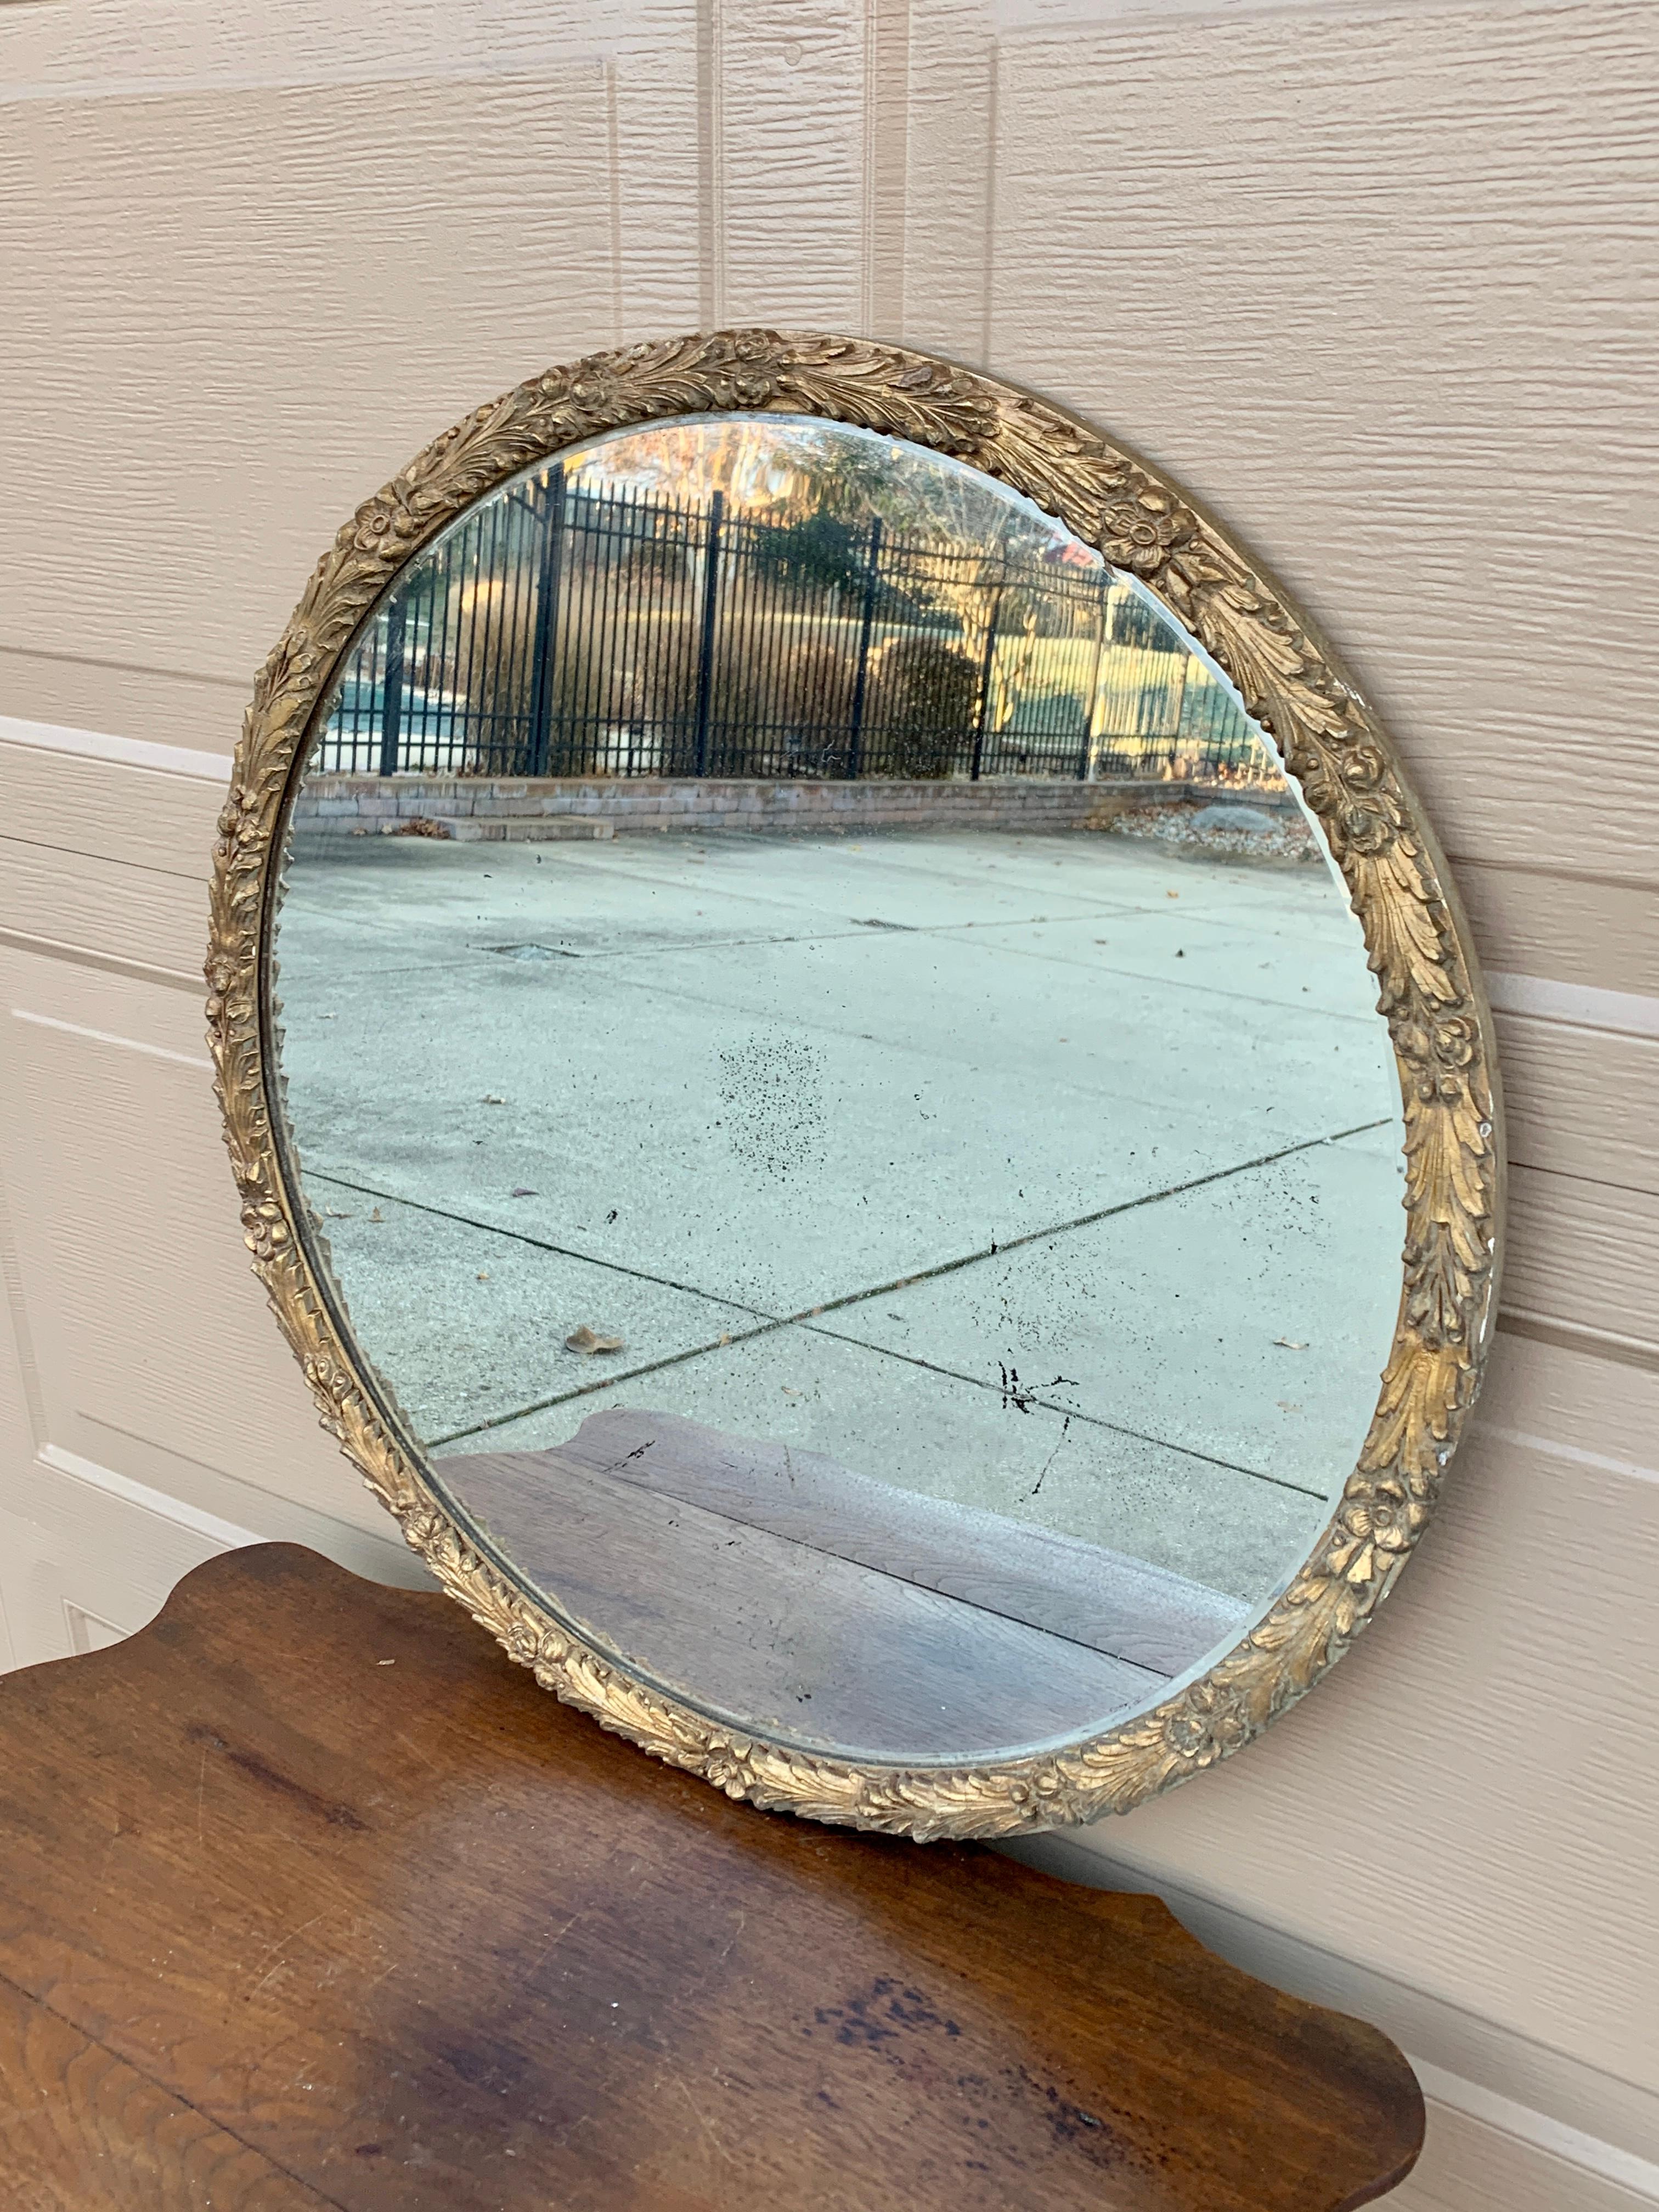 Ein prächtiger antiker Spiegel aus vergoldetem Holz im viktorianischen Stil mit geschnitztem Blattmotiv. 

USA, ca. 1940er Jahre

Maße: 26 